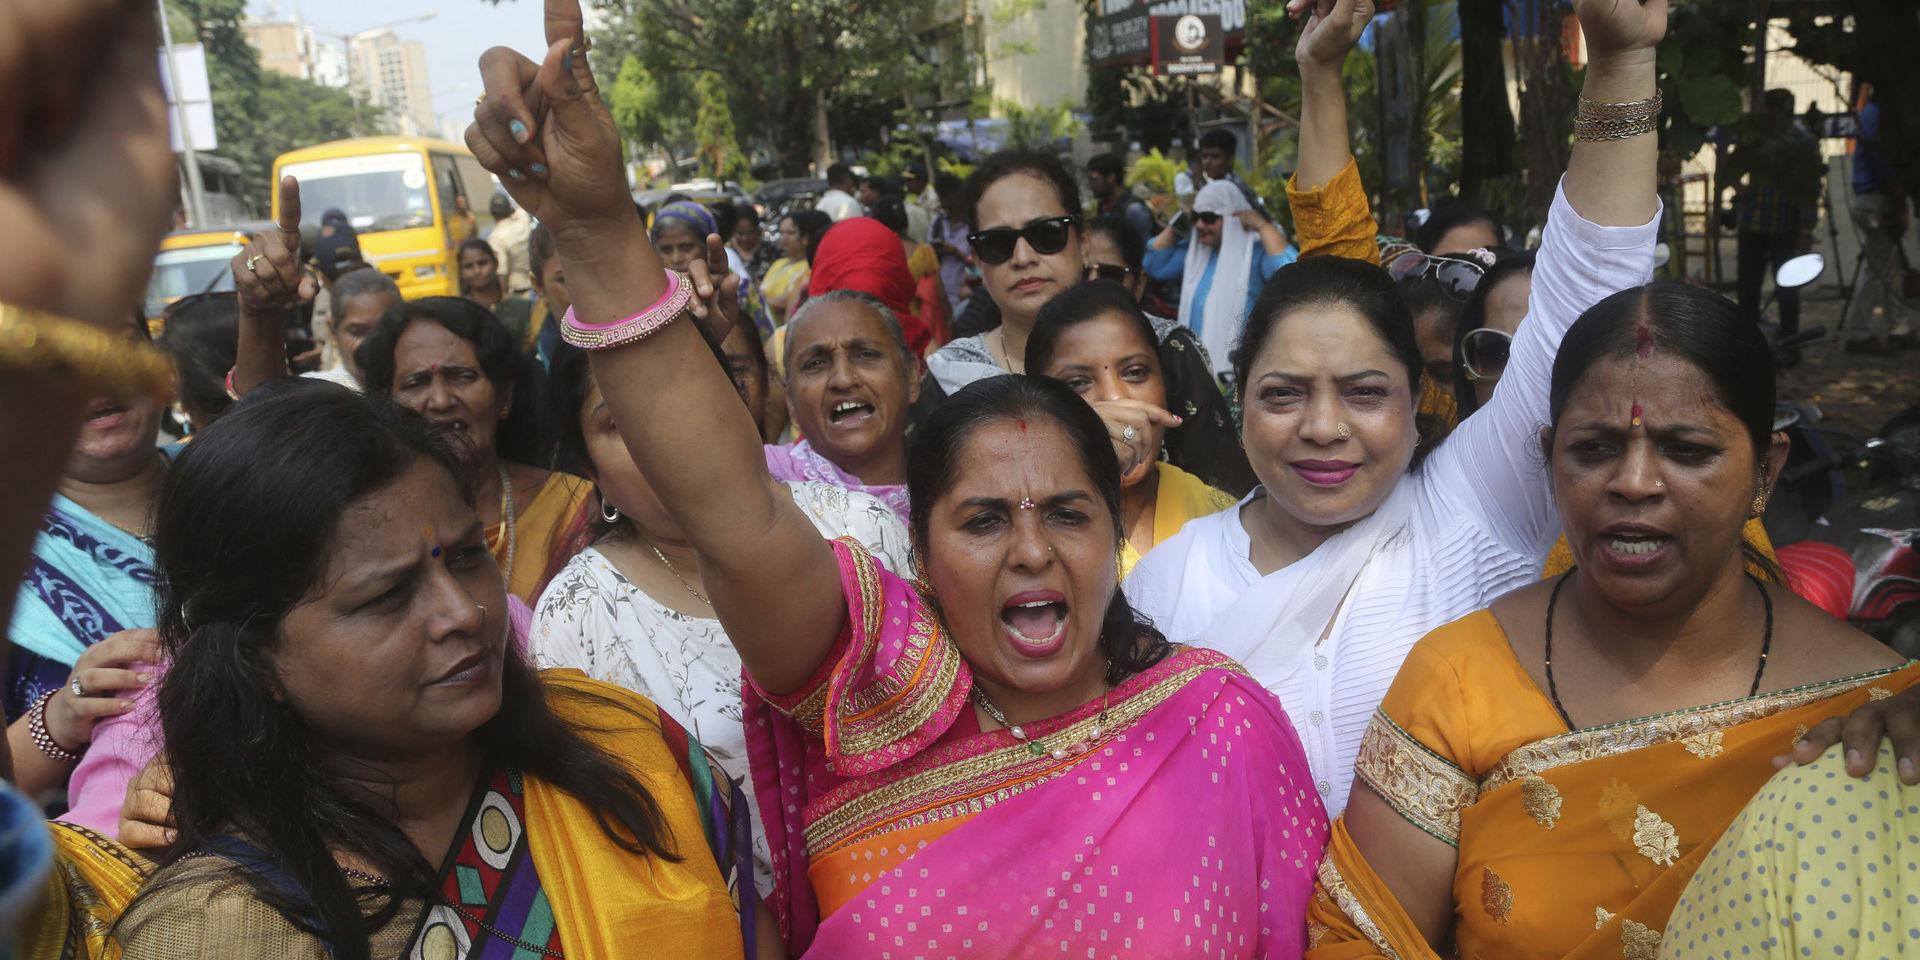 Aktivister från Bombay demonstrerar till stöd för skådespelerskan Tanushree Dutta, som i oktober i fjol anklagade sin kollega Nana Patekar för sexuellt ofredande.